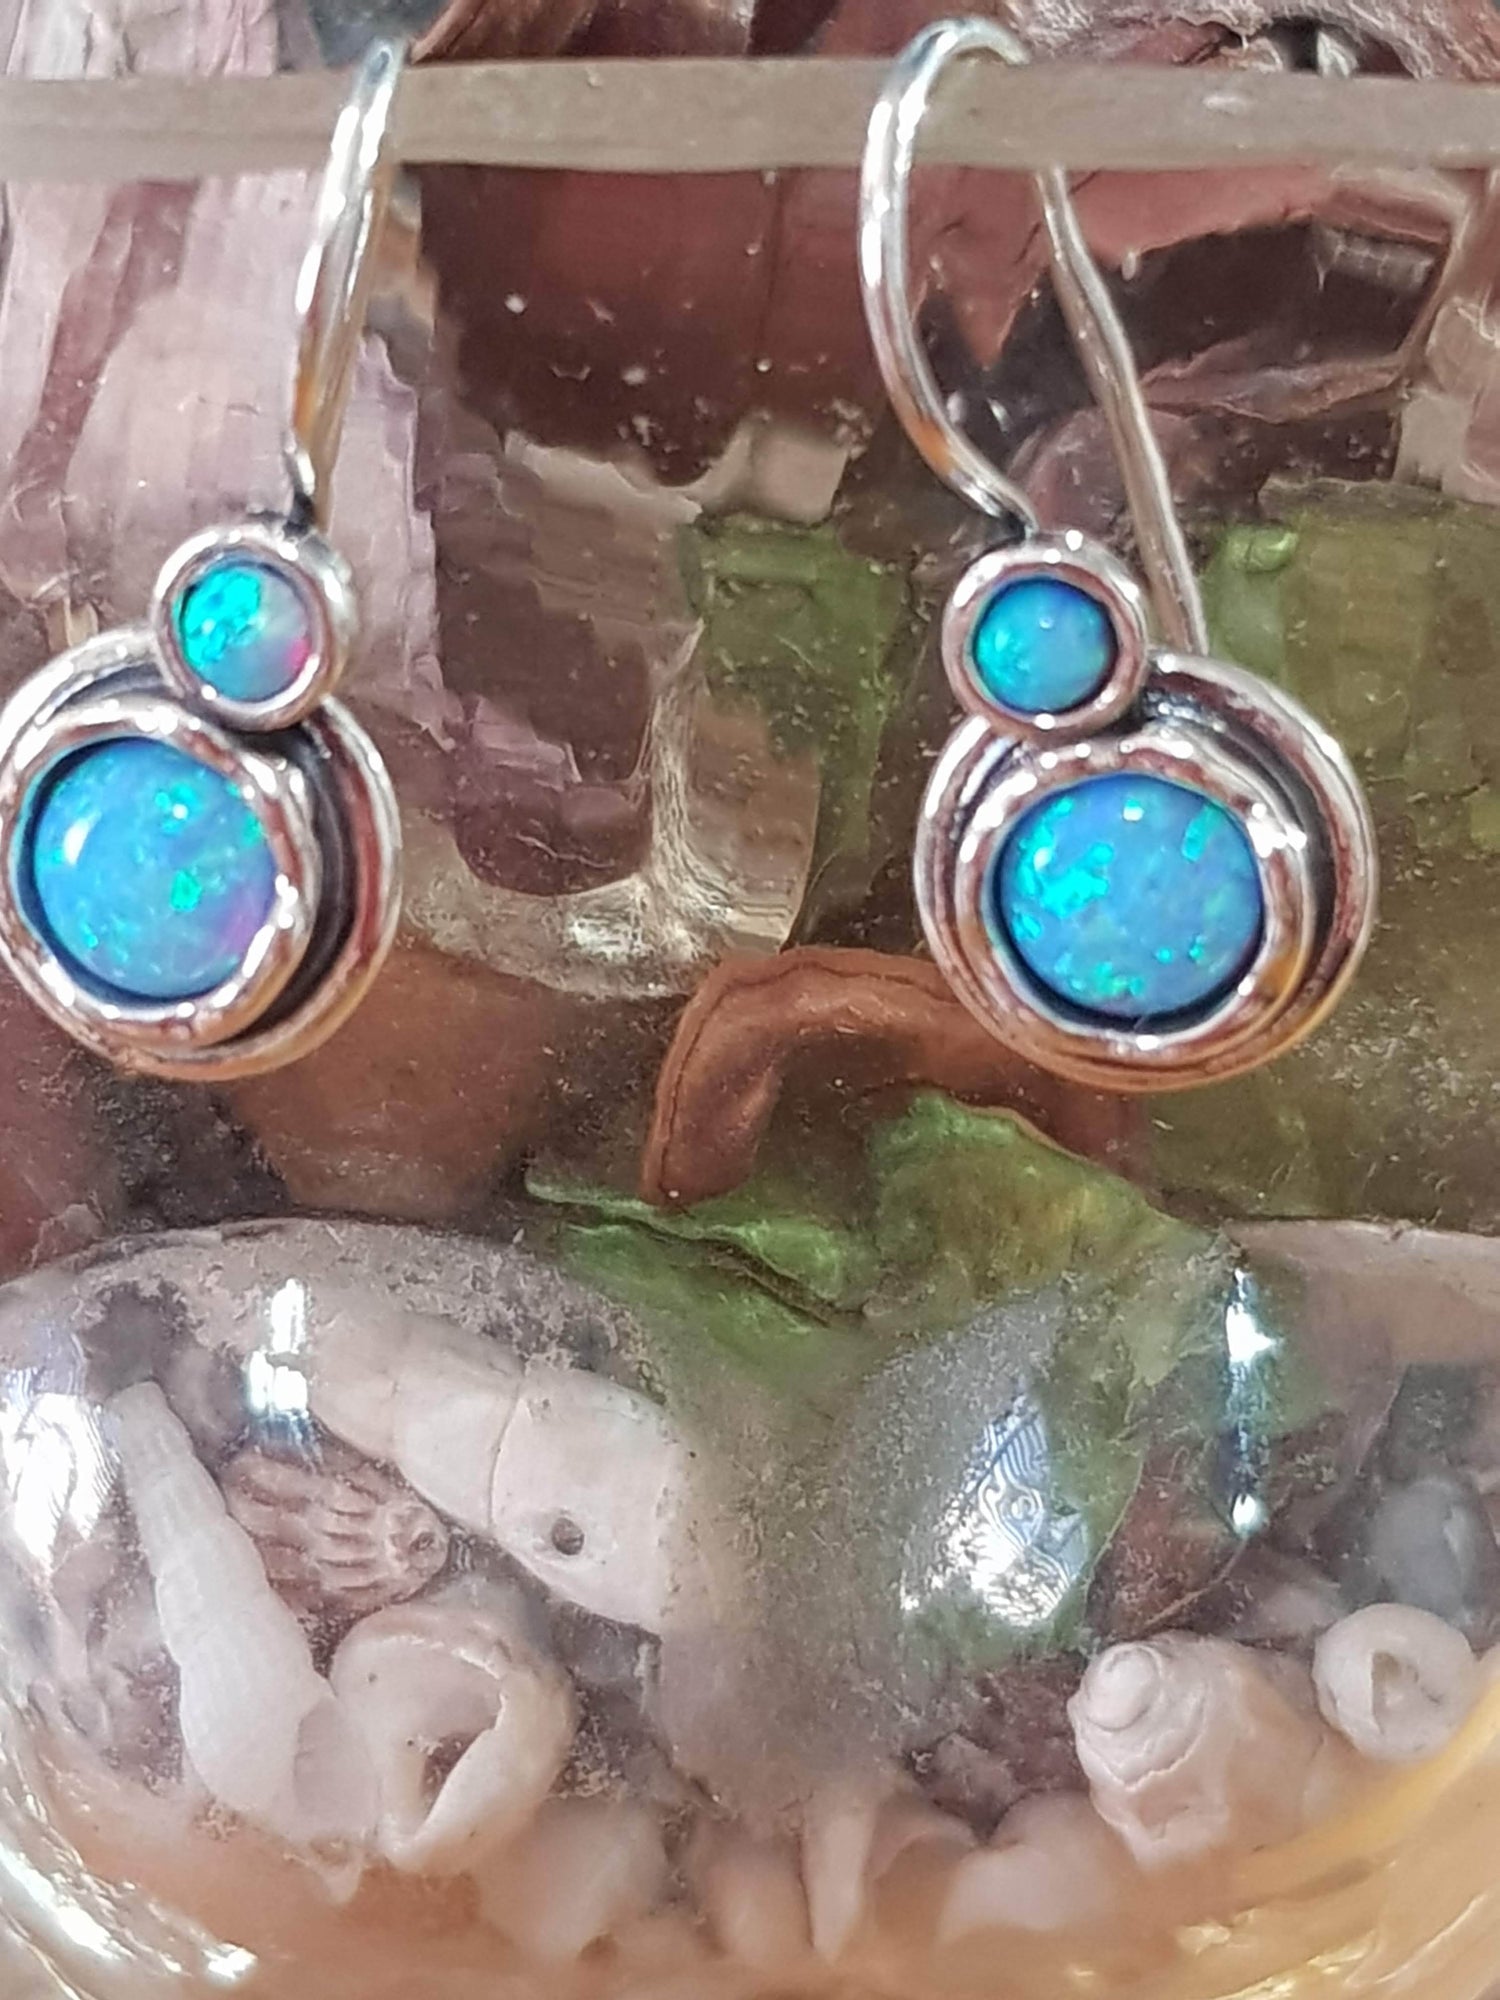 Bluenoemi Earrings Blue Earrings opal silver / earrings for women / dangle earrings